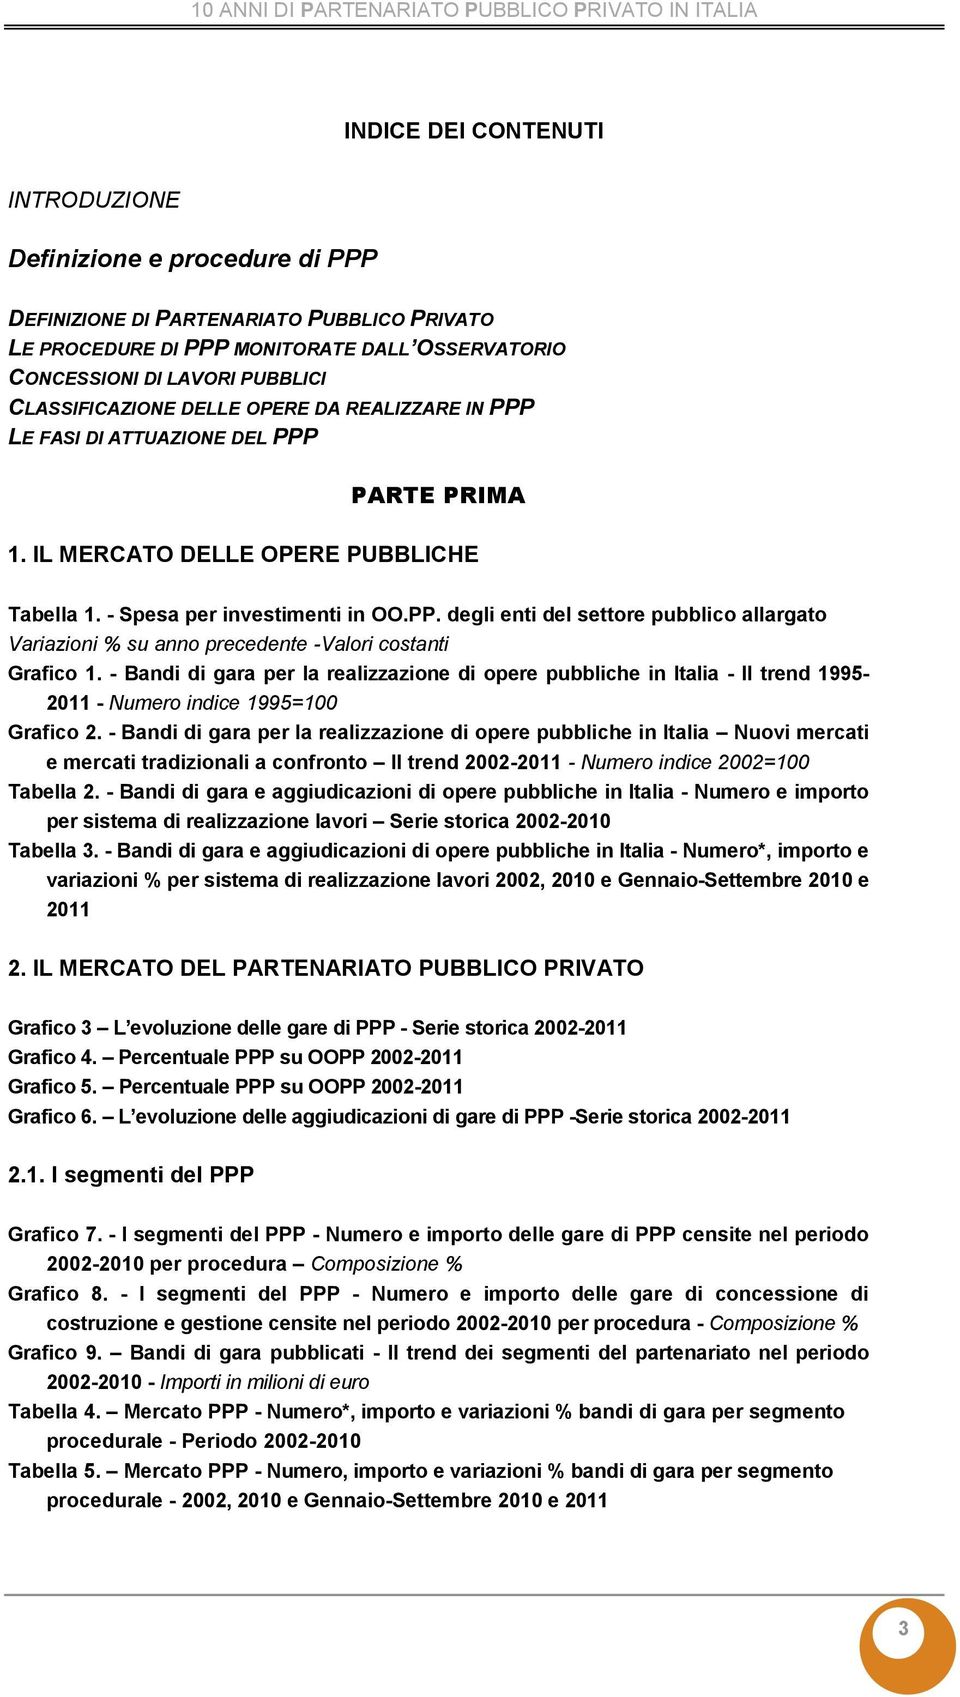 - Bandi di gara per la realizzazione di opere pubbliche in Italia - Il trend 1995- - Numero indice 1995=100 Grafico 2.